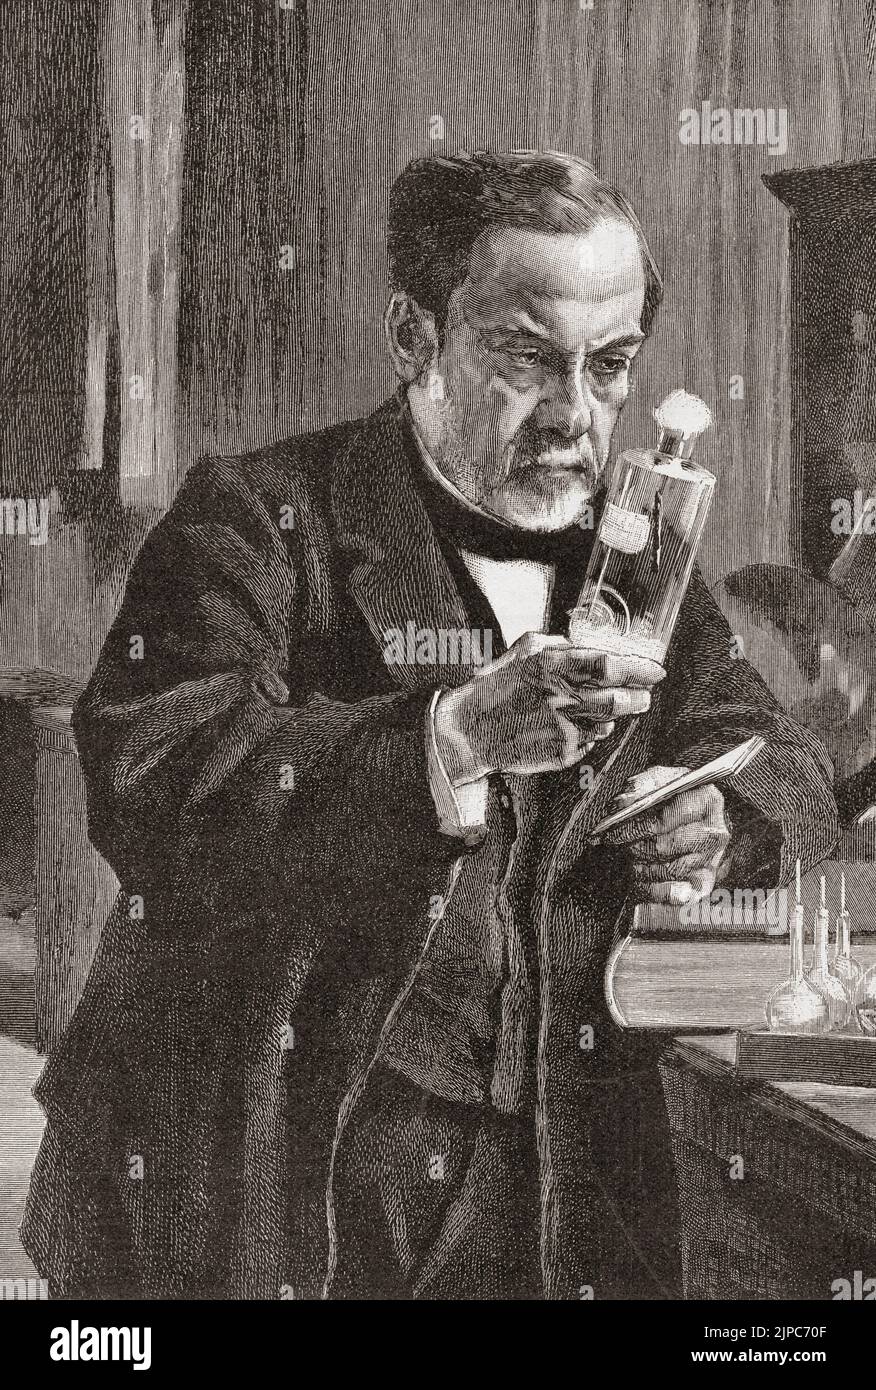 Louis Pasteur nel suo laboratorio. Louis Pasteur, 1822 - 1895. Chimico e microbioligista francese che scoprì, tra l'altro, la pastorizzazione e i principi della vaccinazione. Fu anche un primo sostenitore moderno della teoria germinale delle malattie. Dopo un'illustrazione in un'edizione 1893 del giornale illustrato di Frank Leslie. Foto Stock